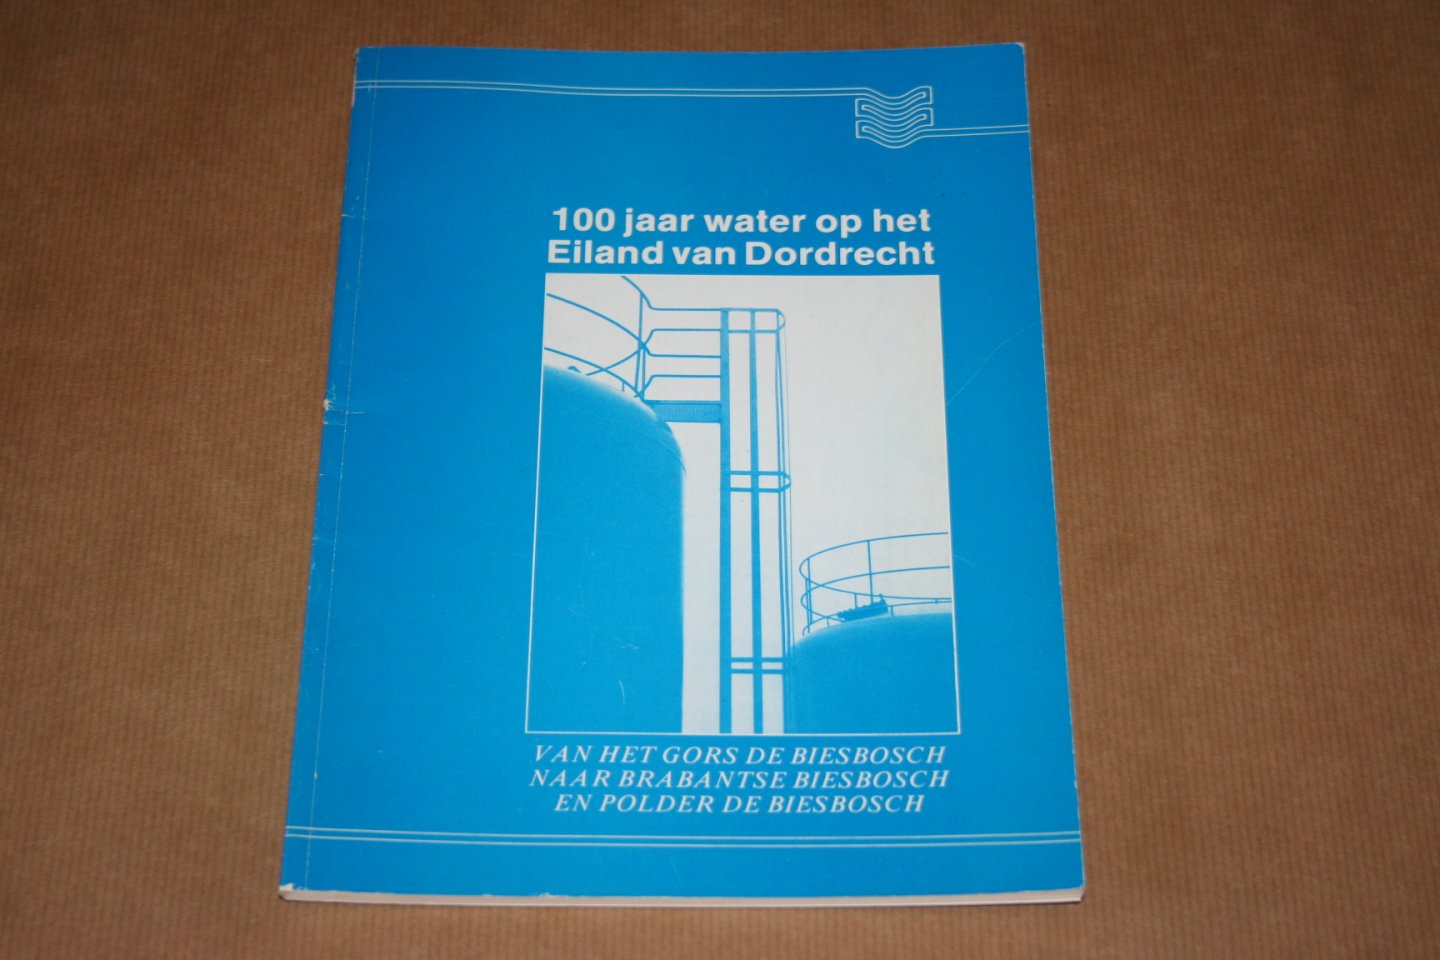  - 100 jaar water op het Eiland van Dordrecht --- Van het Gors de Biesbosch naar Brabantse Biesbosch en Polder de Biesbosch